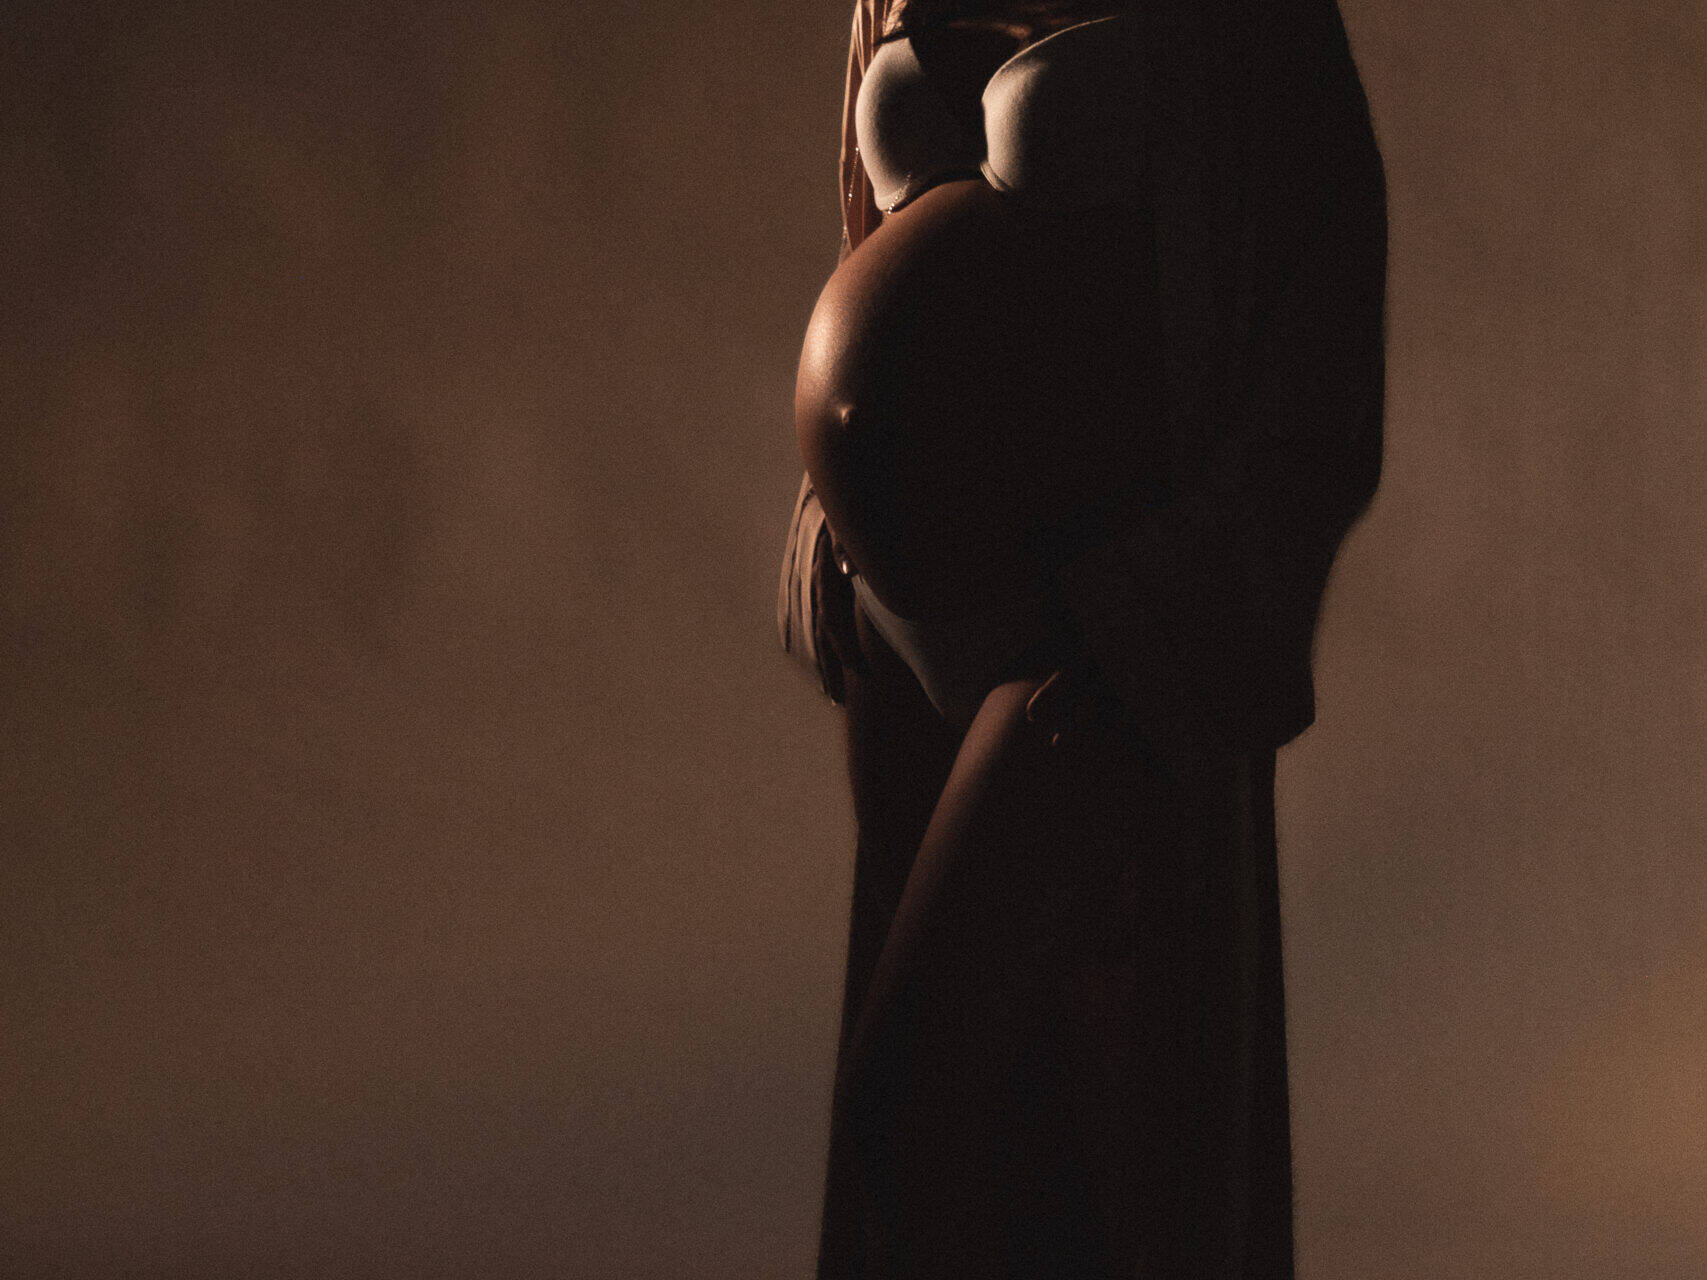 Pregnant woman silhouette smiles